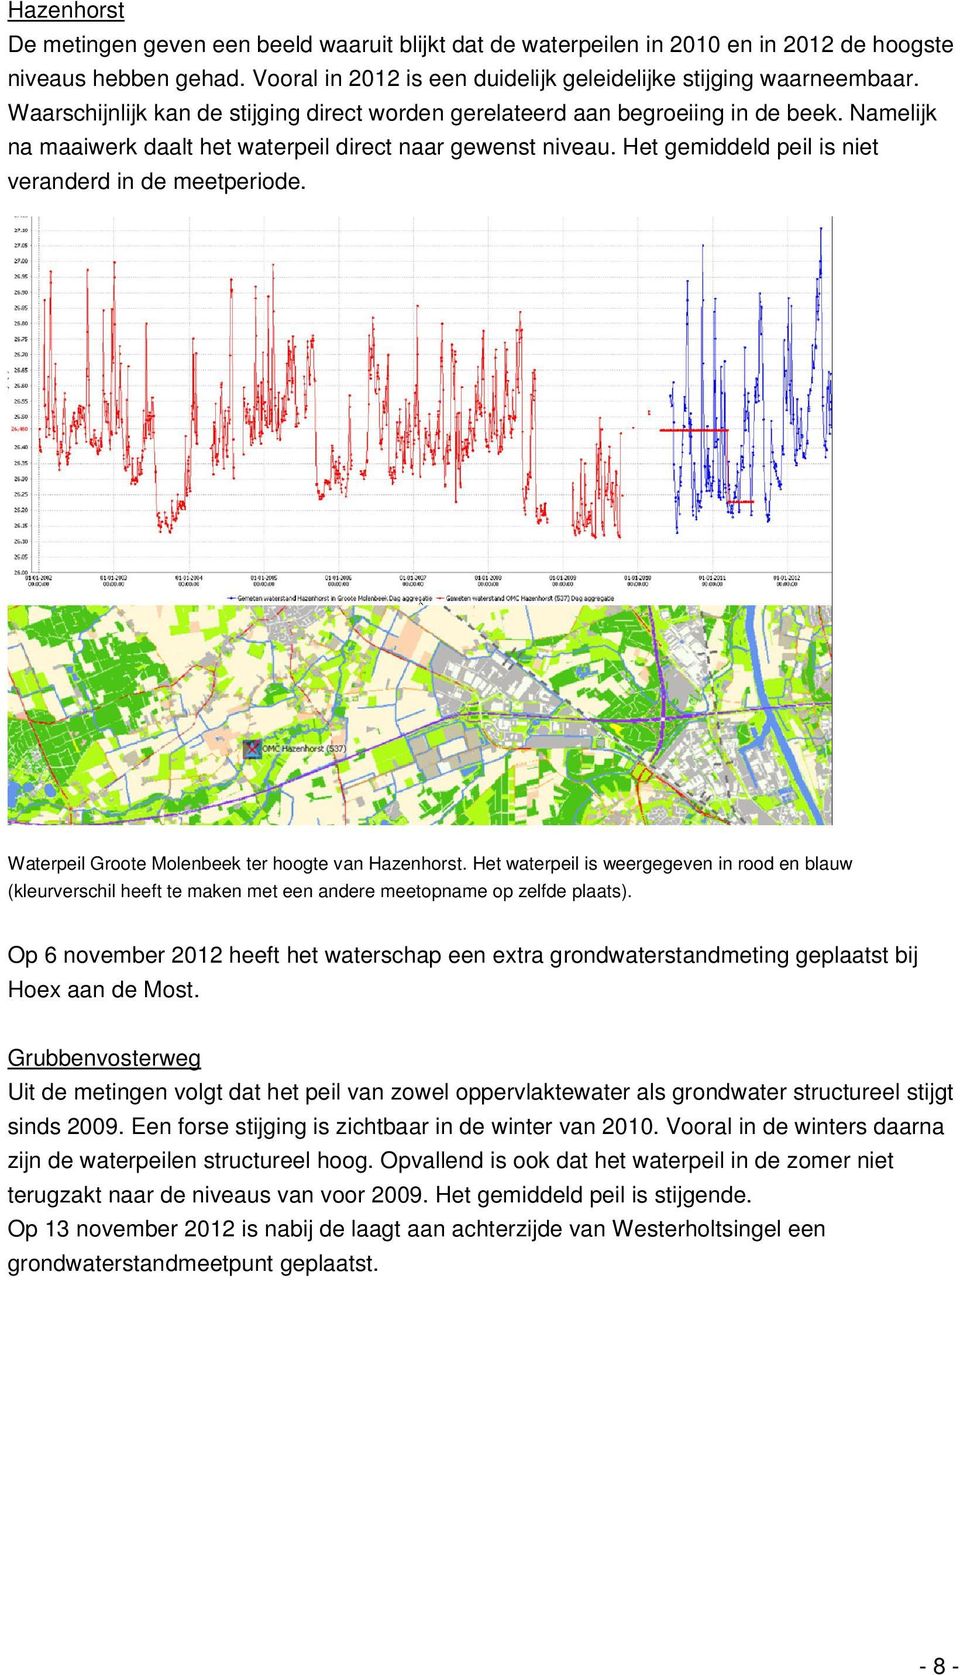 Het gemiddeld peil is niet veranderd in de meetperiode. Waterpeil Groote Molenbeek ter hoogte van Hazenhorst.